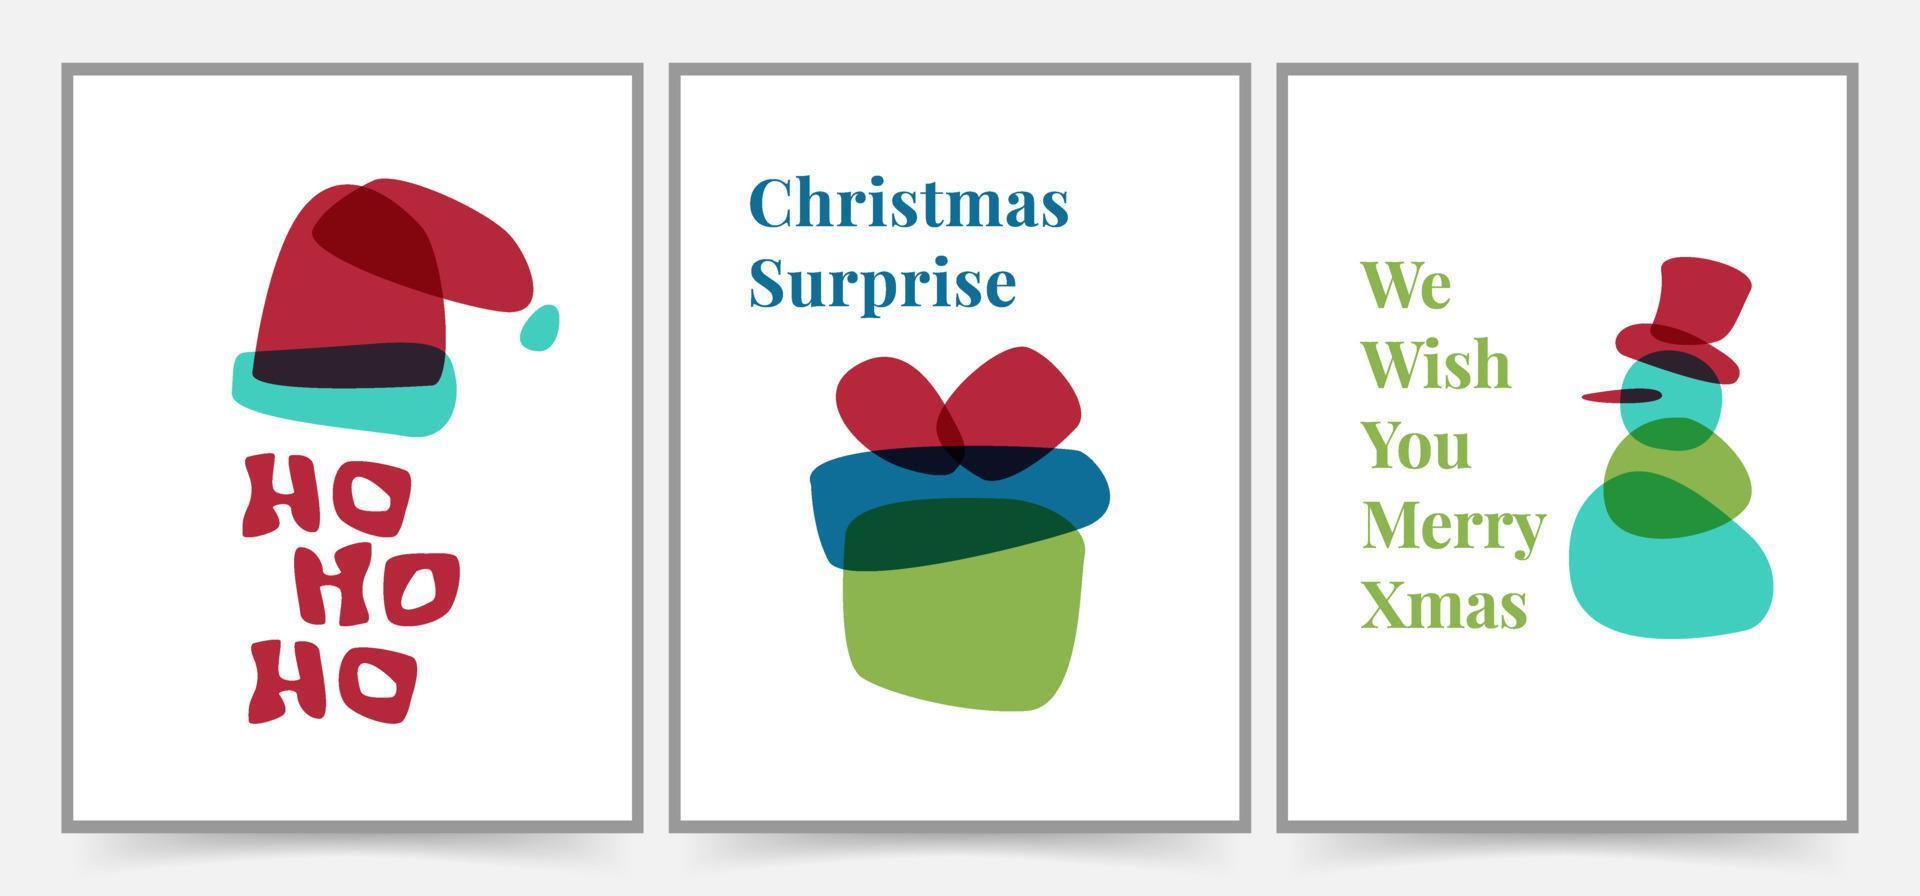 simples tarjetas de felicitación de feliz navidad, fondos, carteles y diseño de portada. Ilustración de plantilla de invitaciones y pancartas navideñas. tarjeta de navidad con forma moderna y minimalista. vector